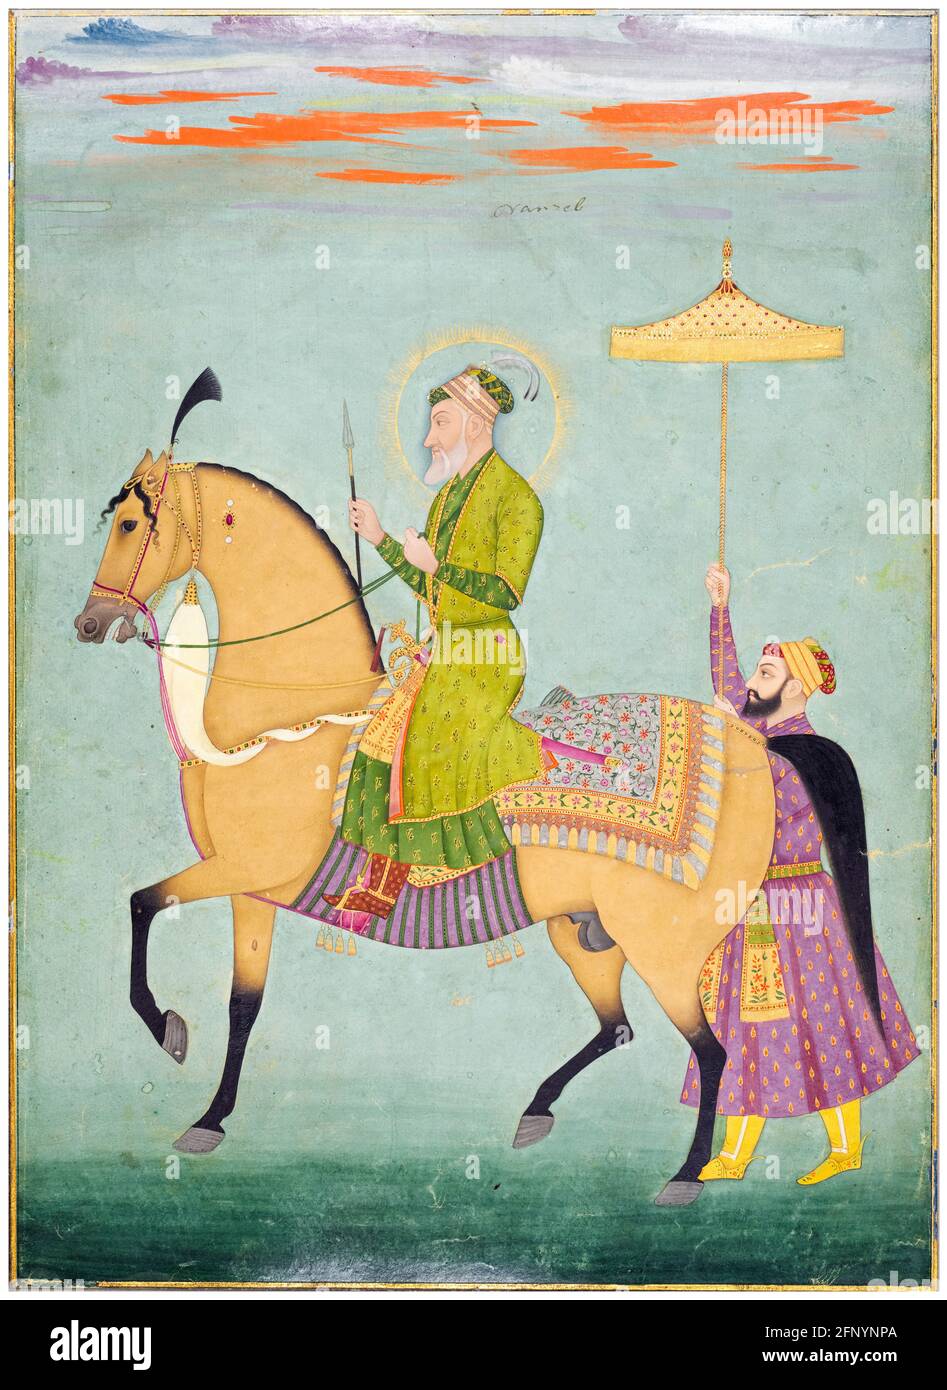 L'empereur Aurangzeb (Alamgir I) (1618-1707), 6e empereur moghol (1658-1707), à cheval, portrait équestre de l'école Mughal, 1690-1710 Banque D'Images